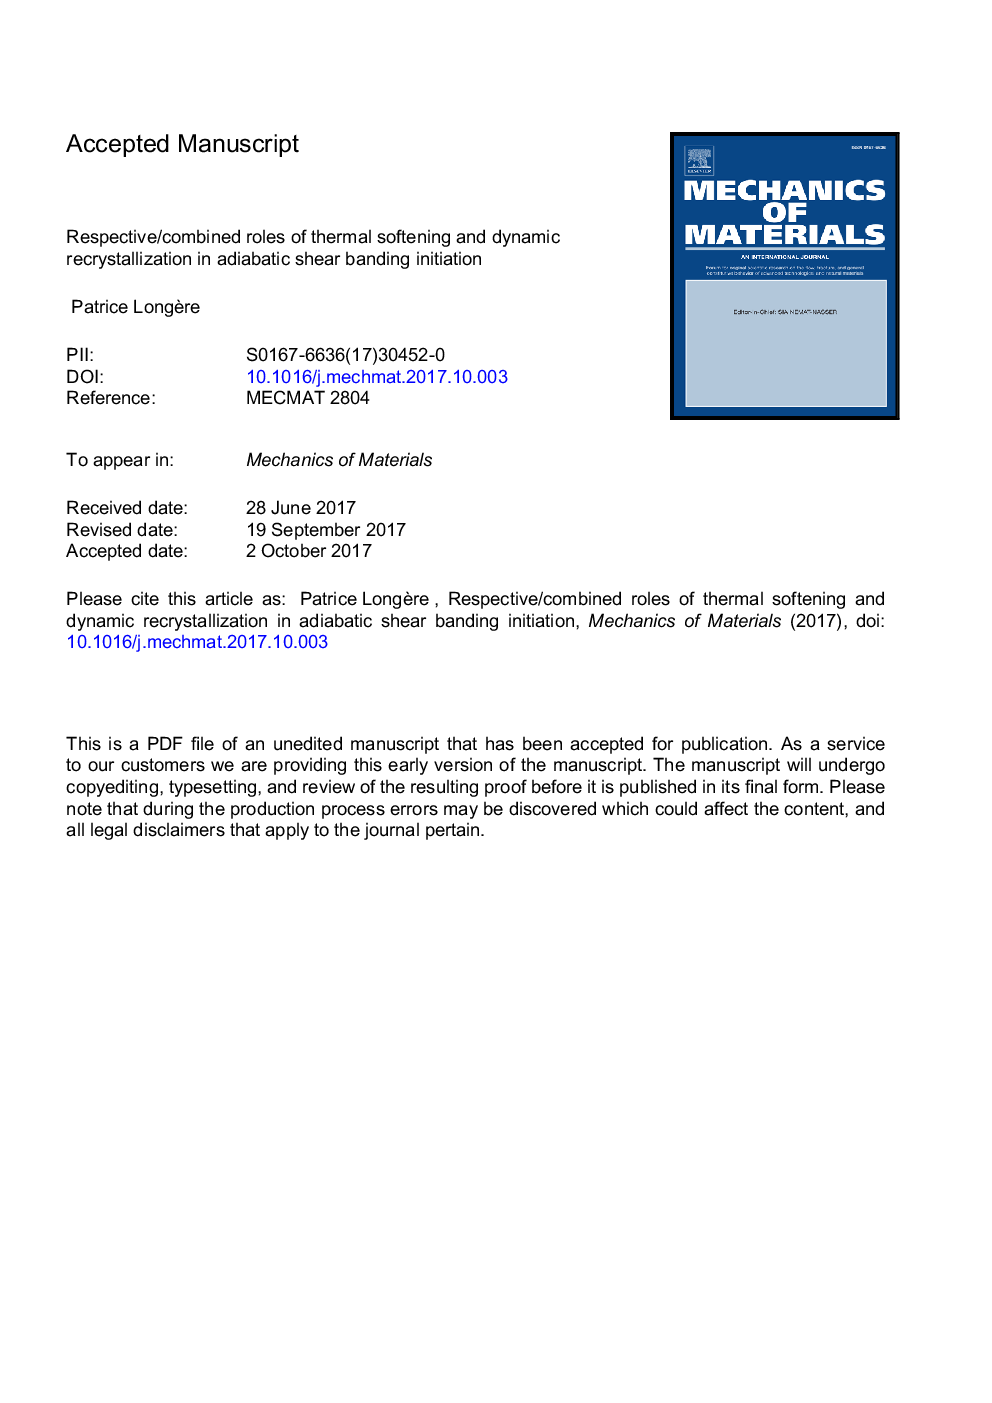 نقش متفاوتی از ترکیب نرم و حرارتی و بازسازی پویا در شروع باندینگ آدیاباتیک 